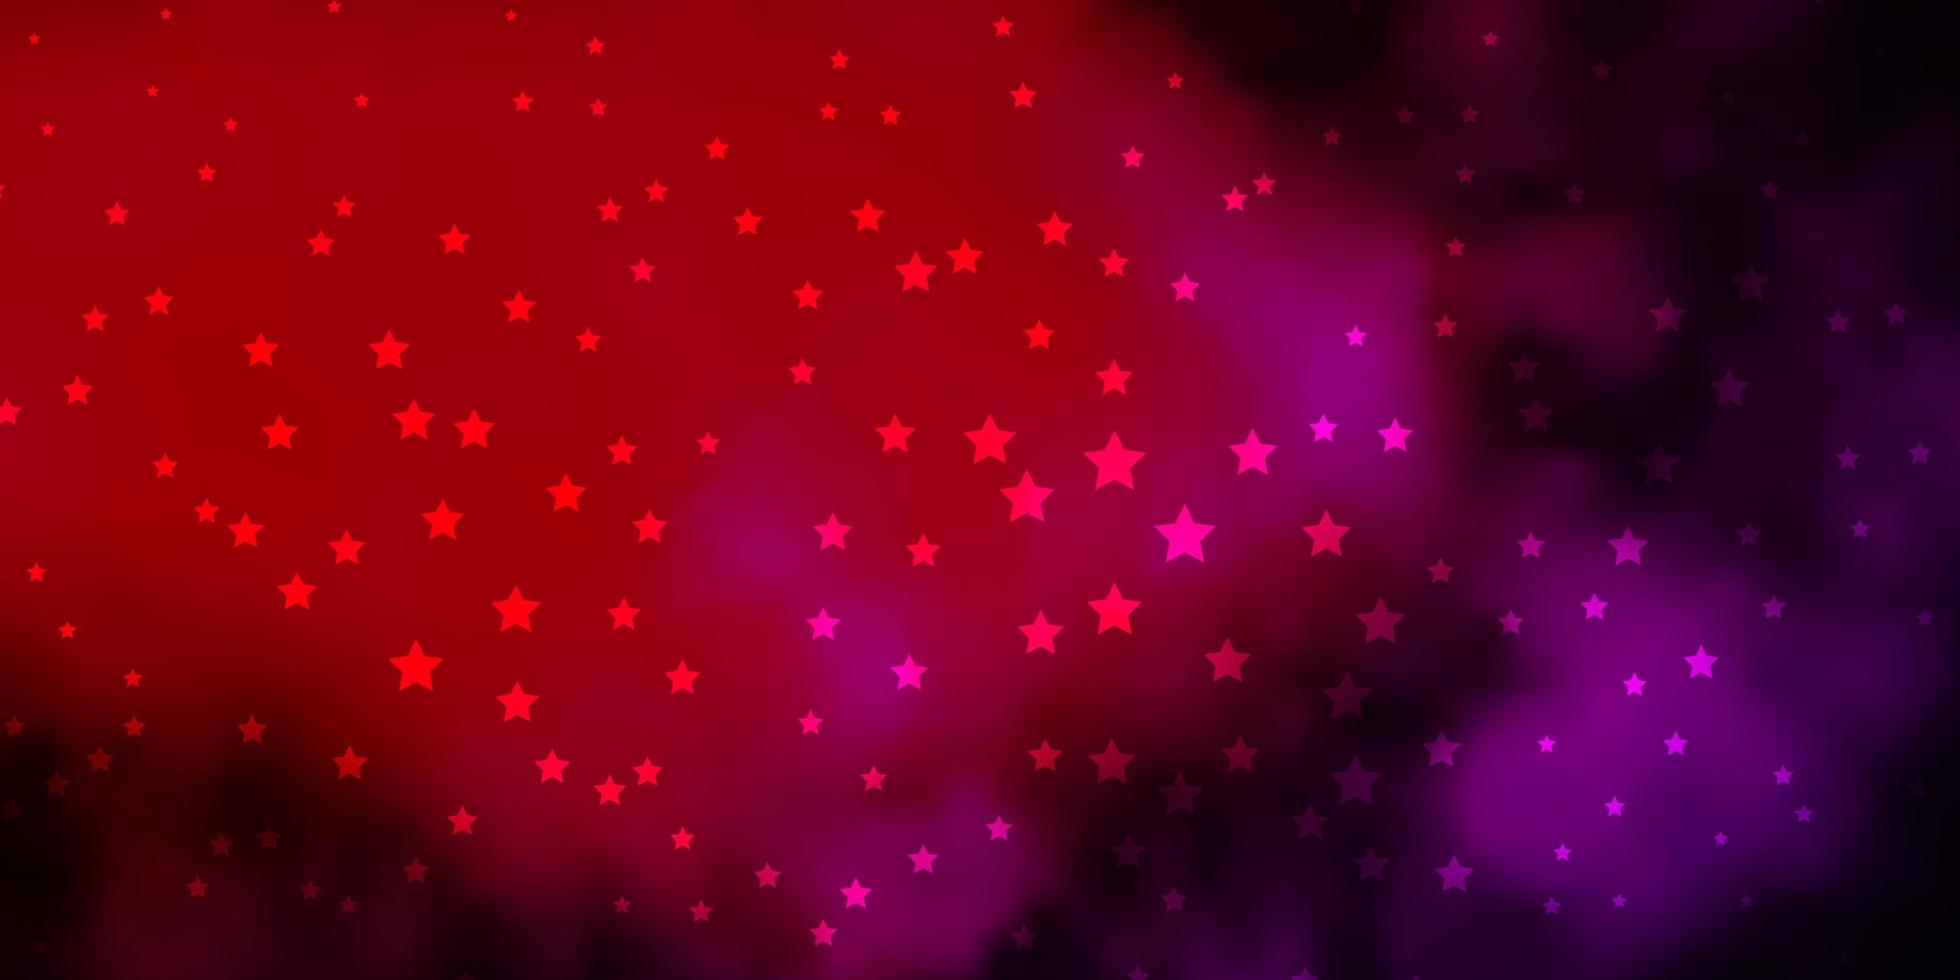 padrão de vetor amarelo rosa escuro com estrelas abstratas ilustração decorativa com estrelas no padrão de modelo abstrato para embrulhar presentes